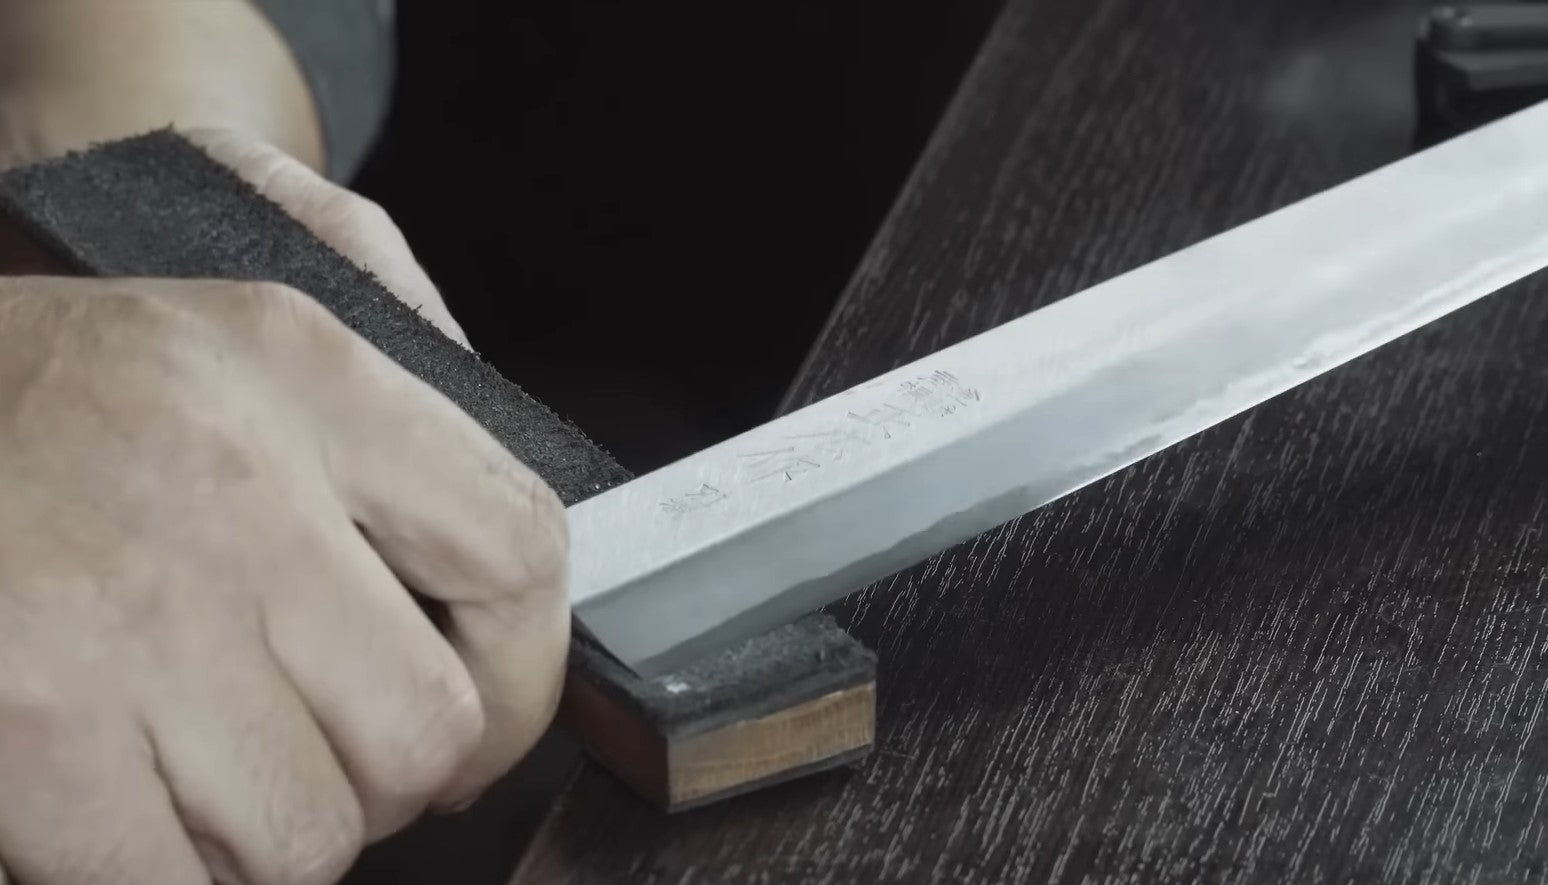 Knife sharpener for Japanese knives